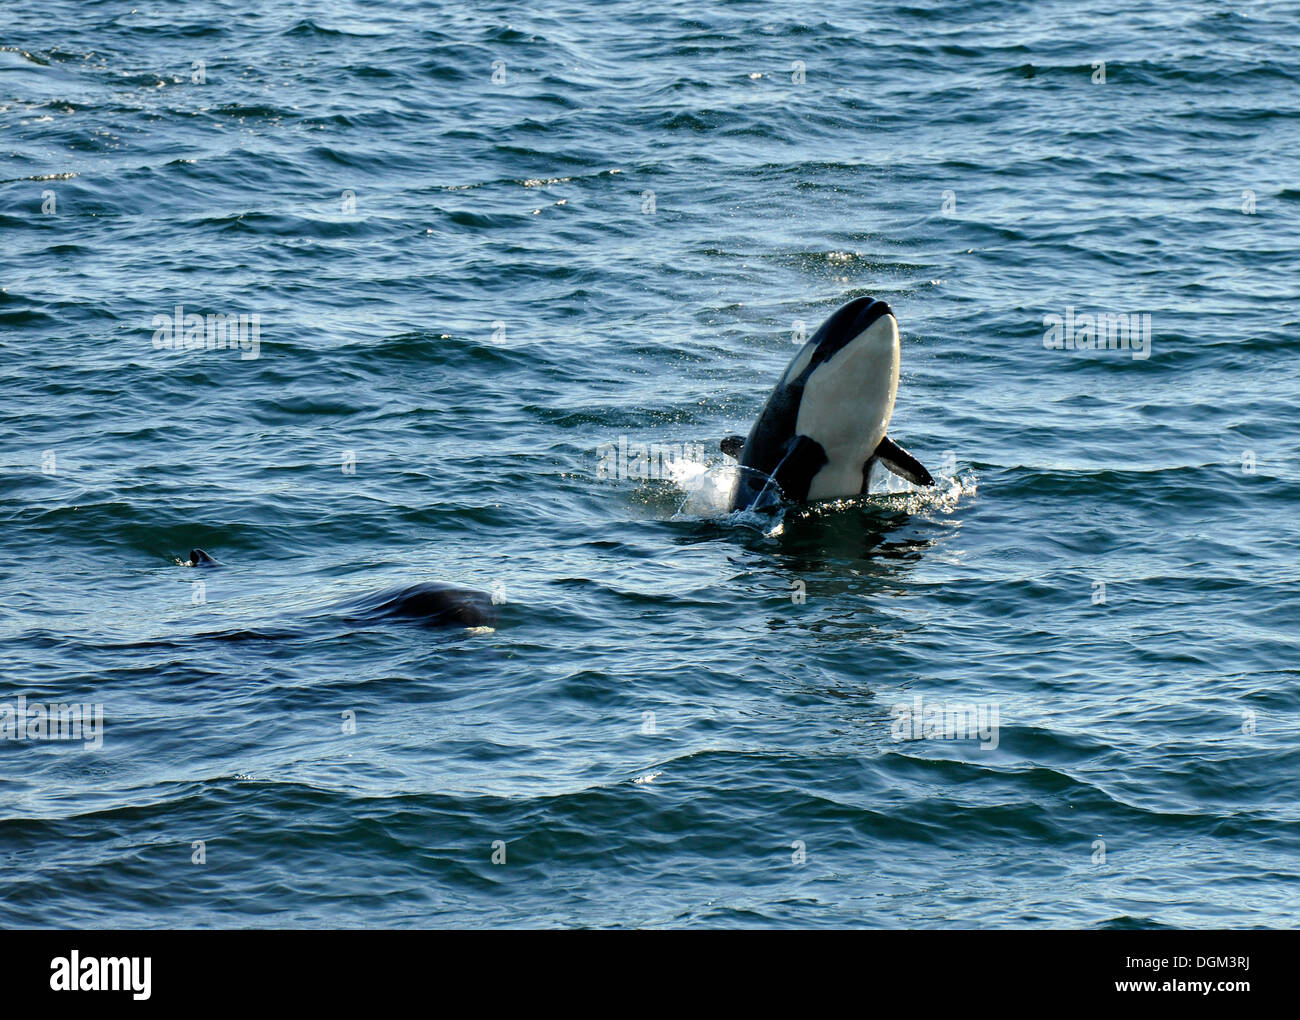 Jumping Killer Whale o Orca (Orcinus orca), stretto di Georgia, l'isola di Vancouver, Canada Foto Stock